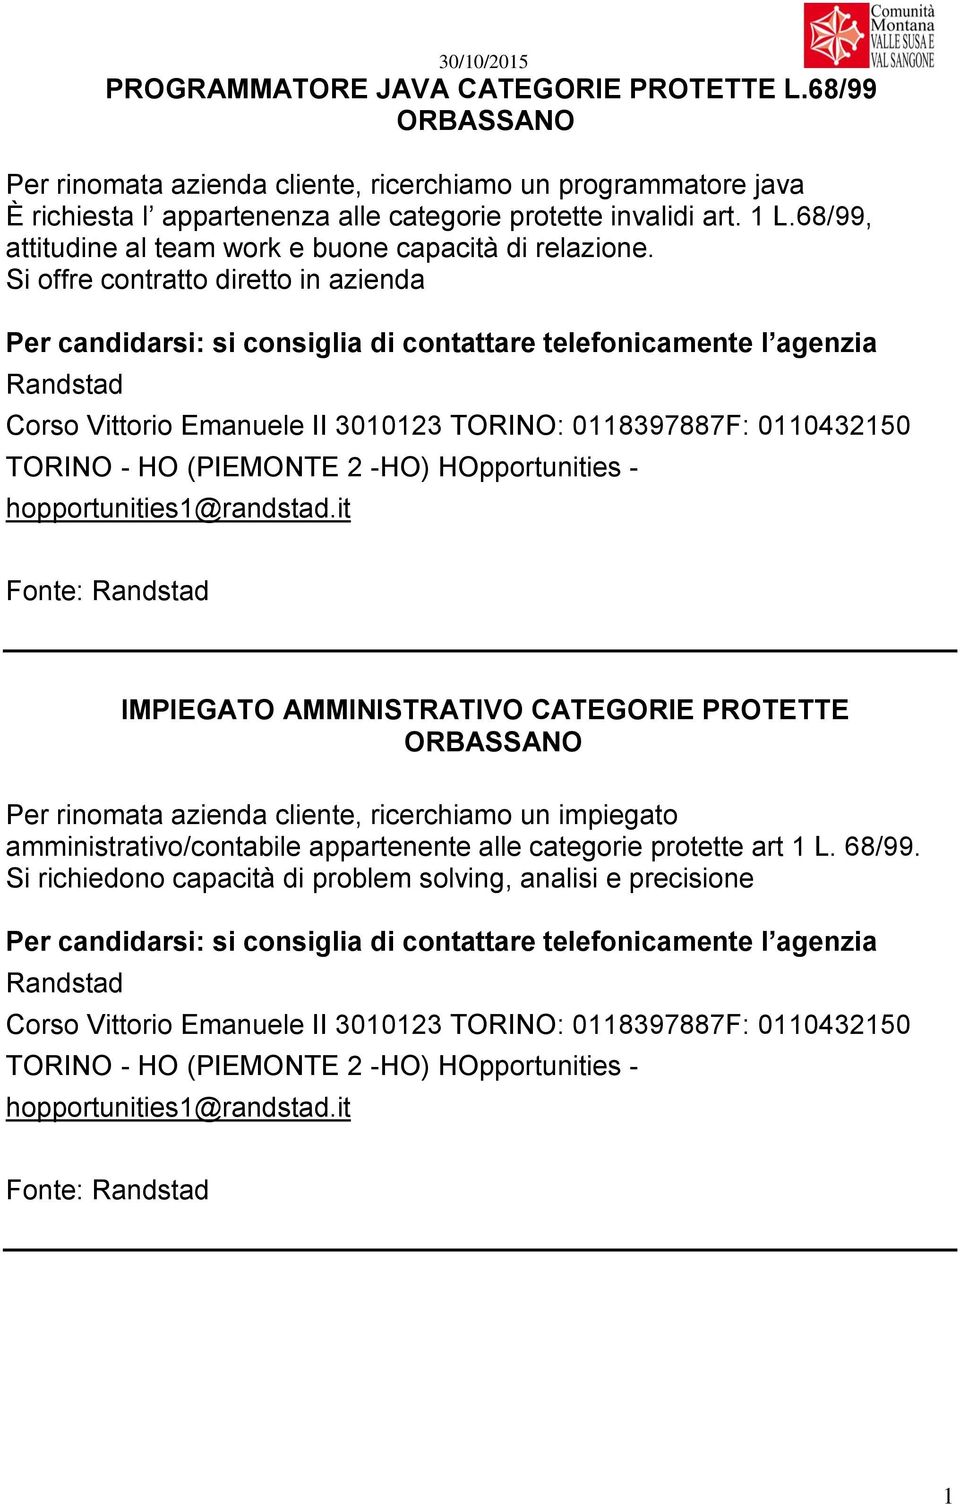 Si offre contratto diretto in azienda Randstad Corso Vittorio Emanuele II 3010123 TORINO: 0118397887F: 0110432150 TORINO - HO (PIEMONTE 2 -HO) HOpportunities - hopportunities1@randstad.